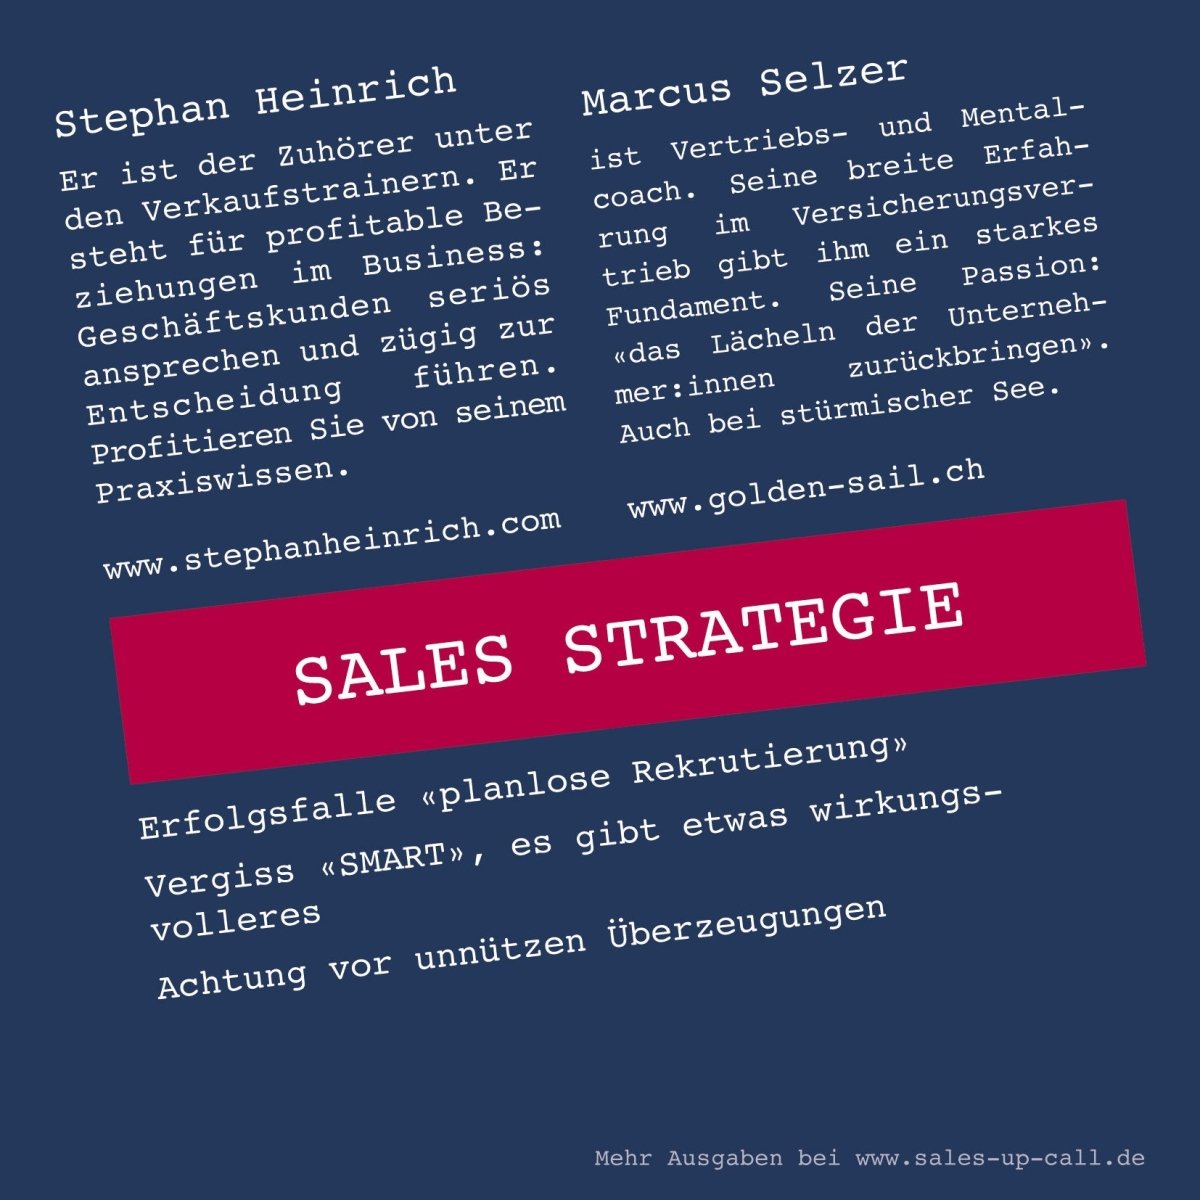 Sales Strategie - Sales-up-Call